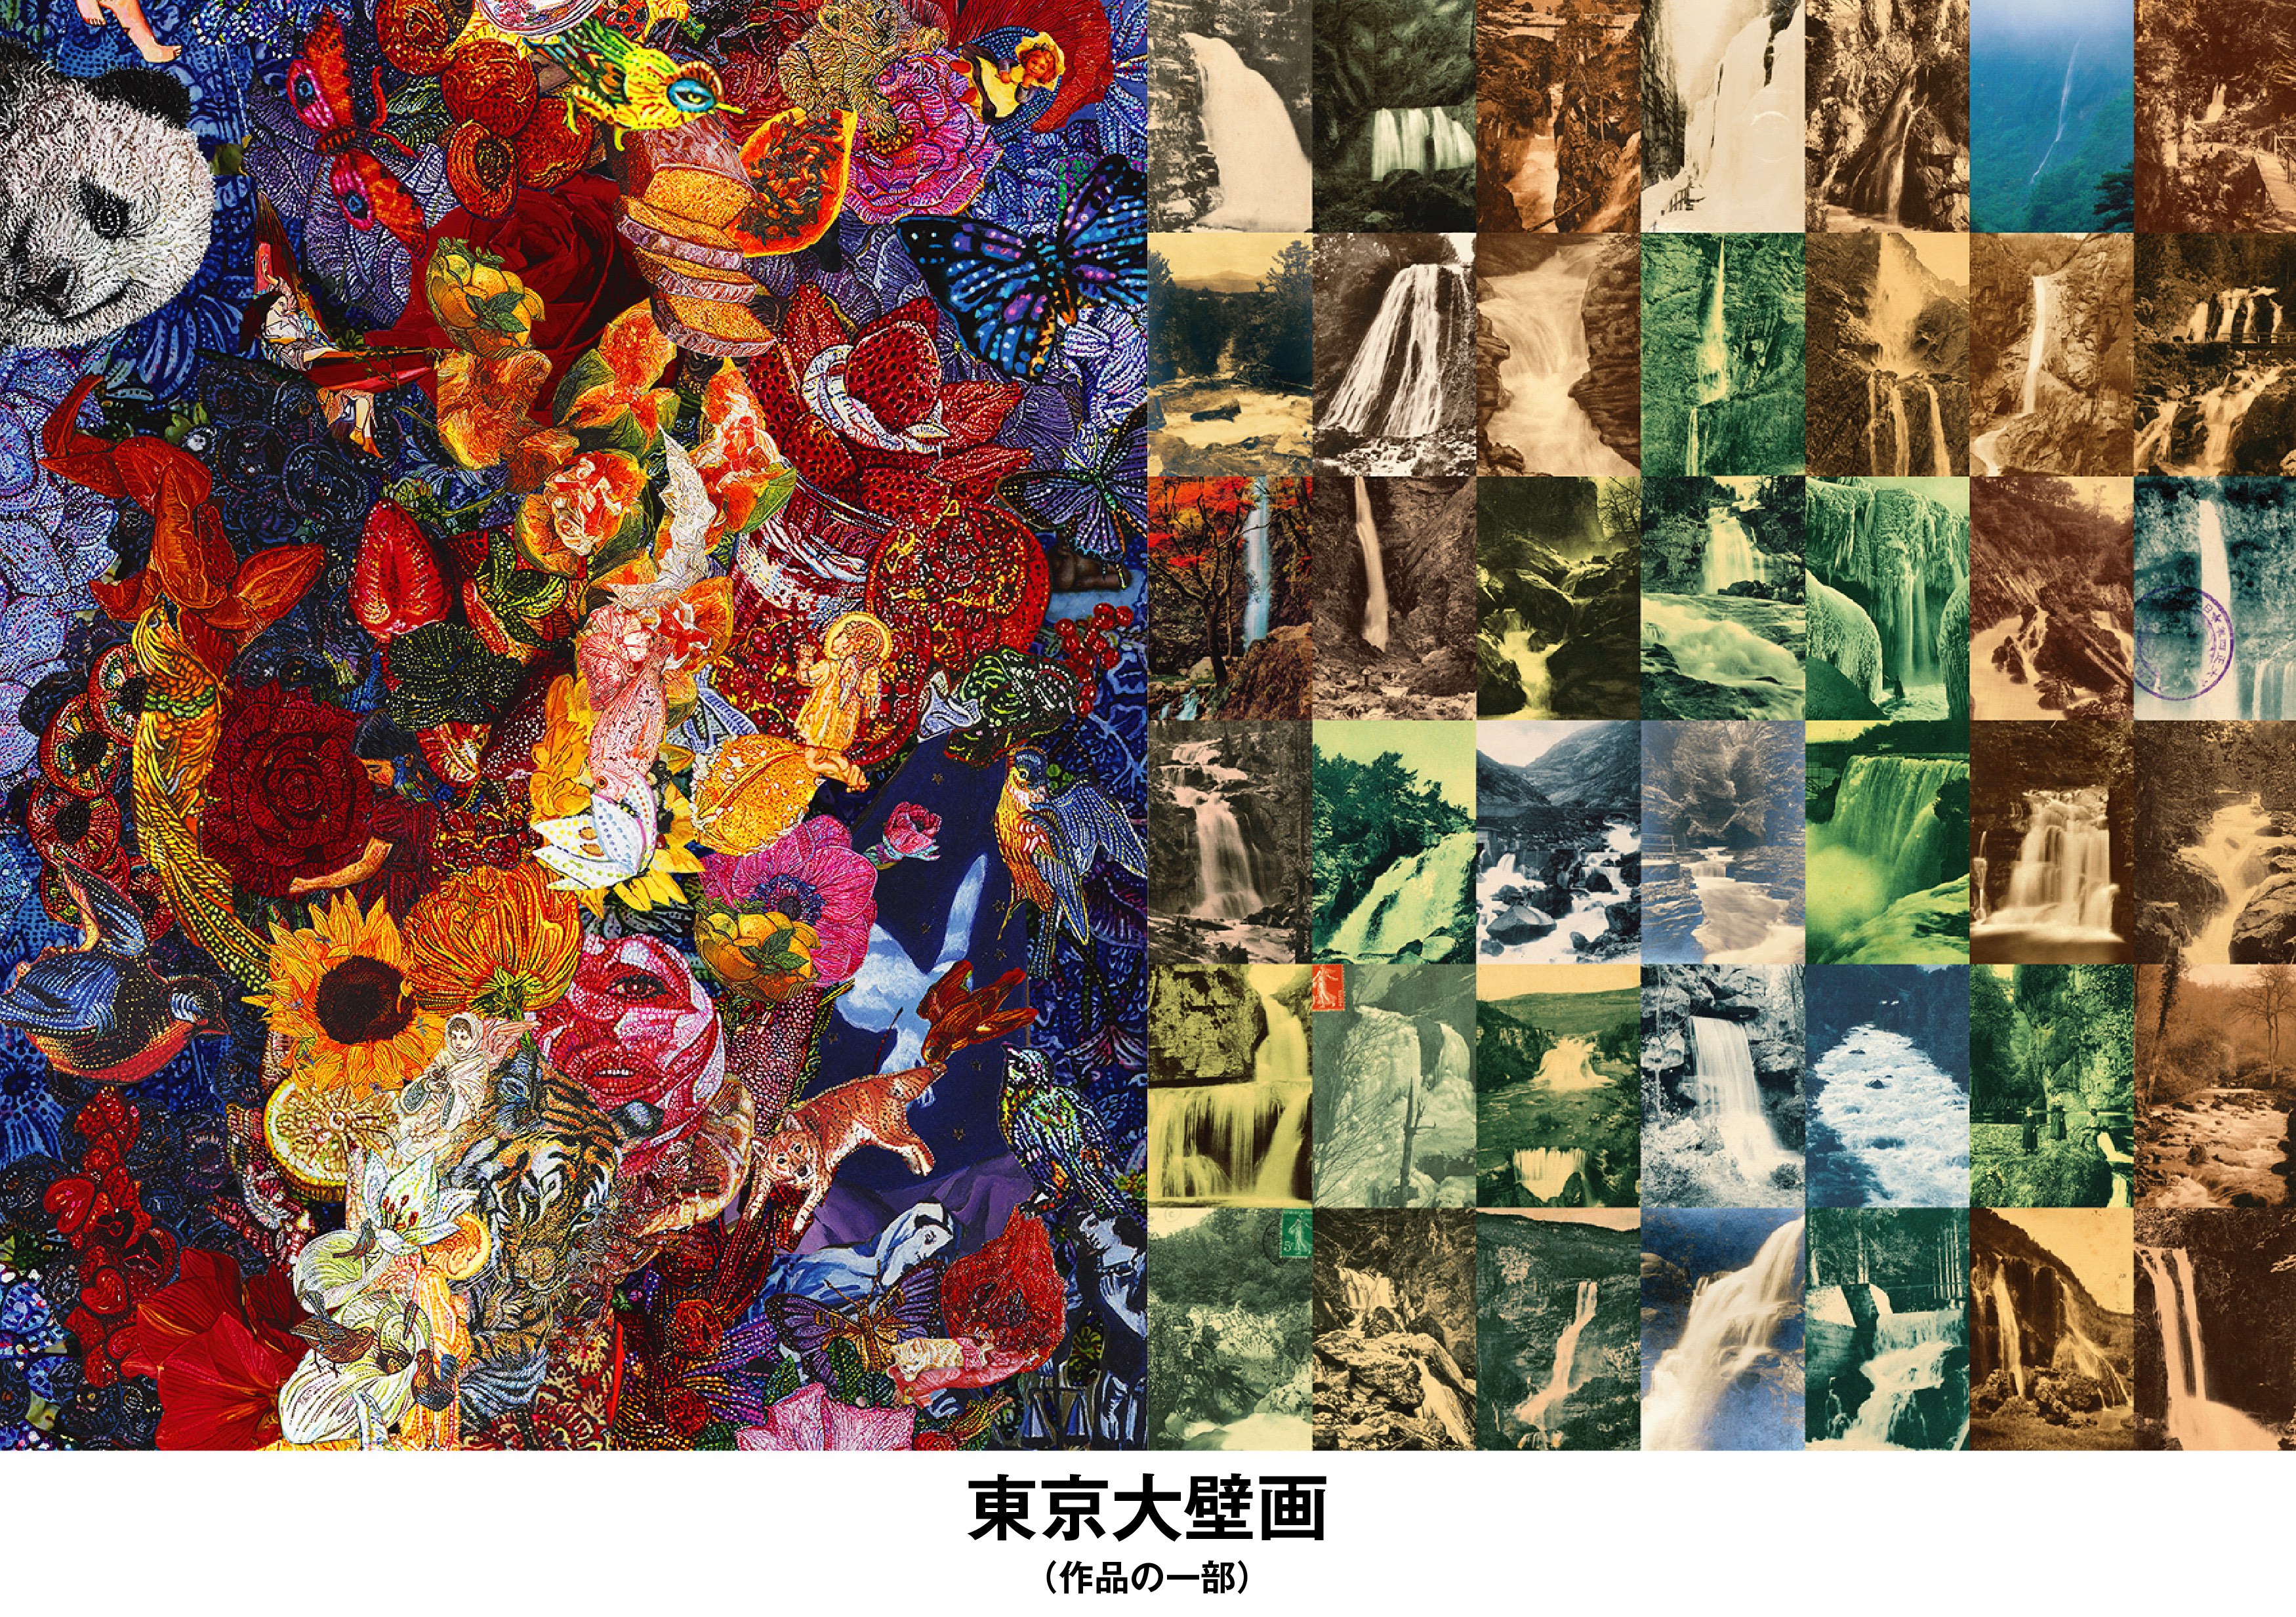 東京大壁画 開催決定 横尾忠則さん 美美さん親子による新作共演が実現 株式会社 Drillのプレスリリース